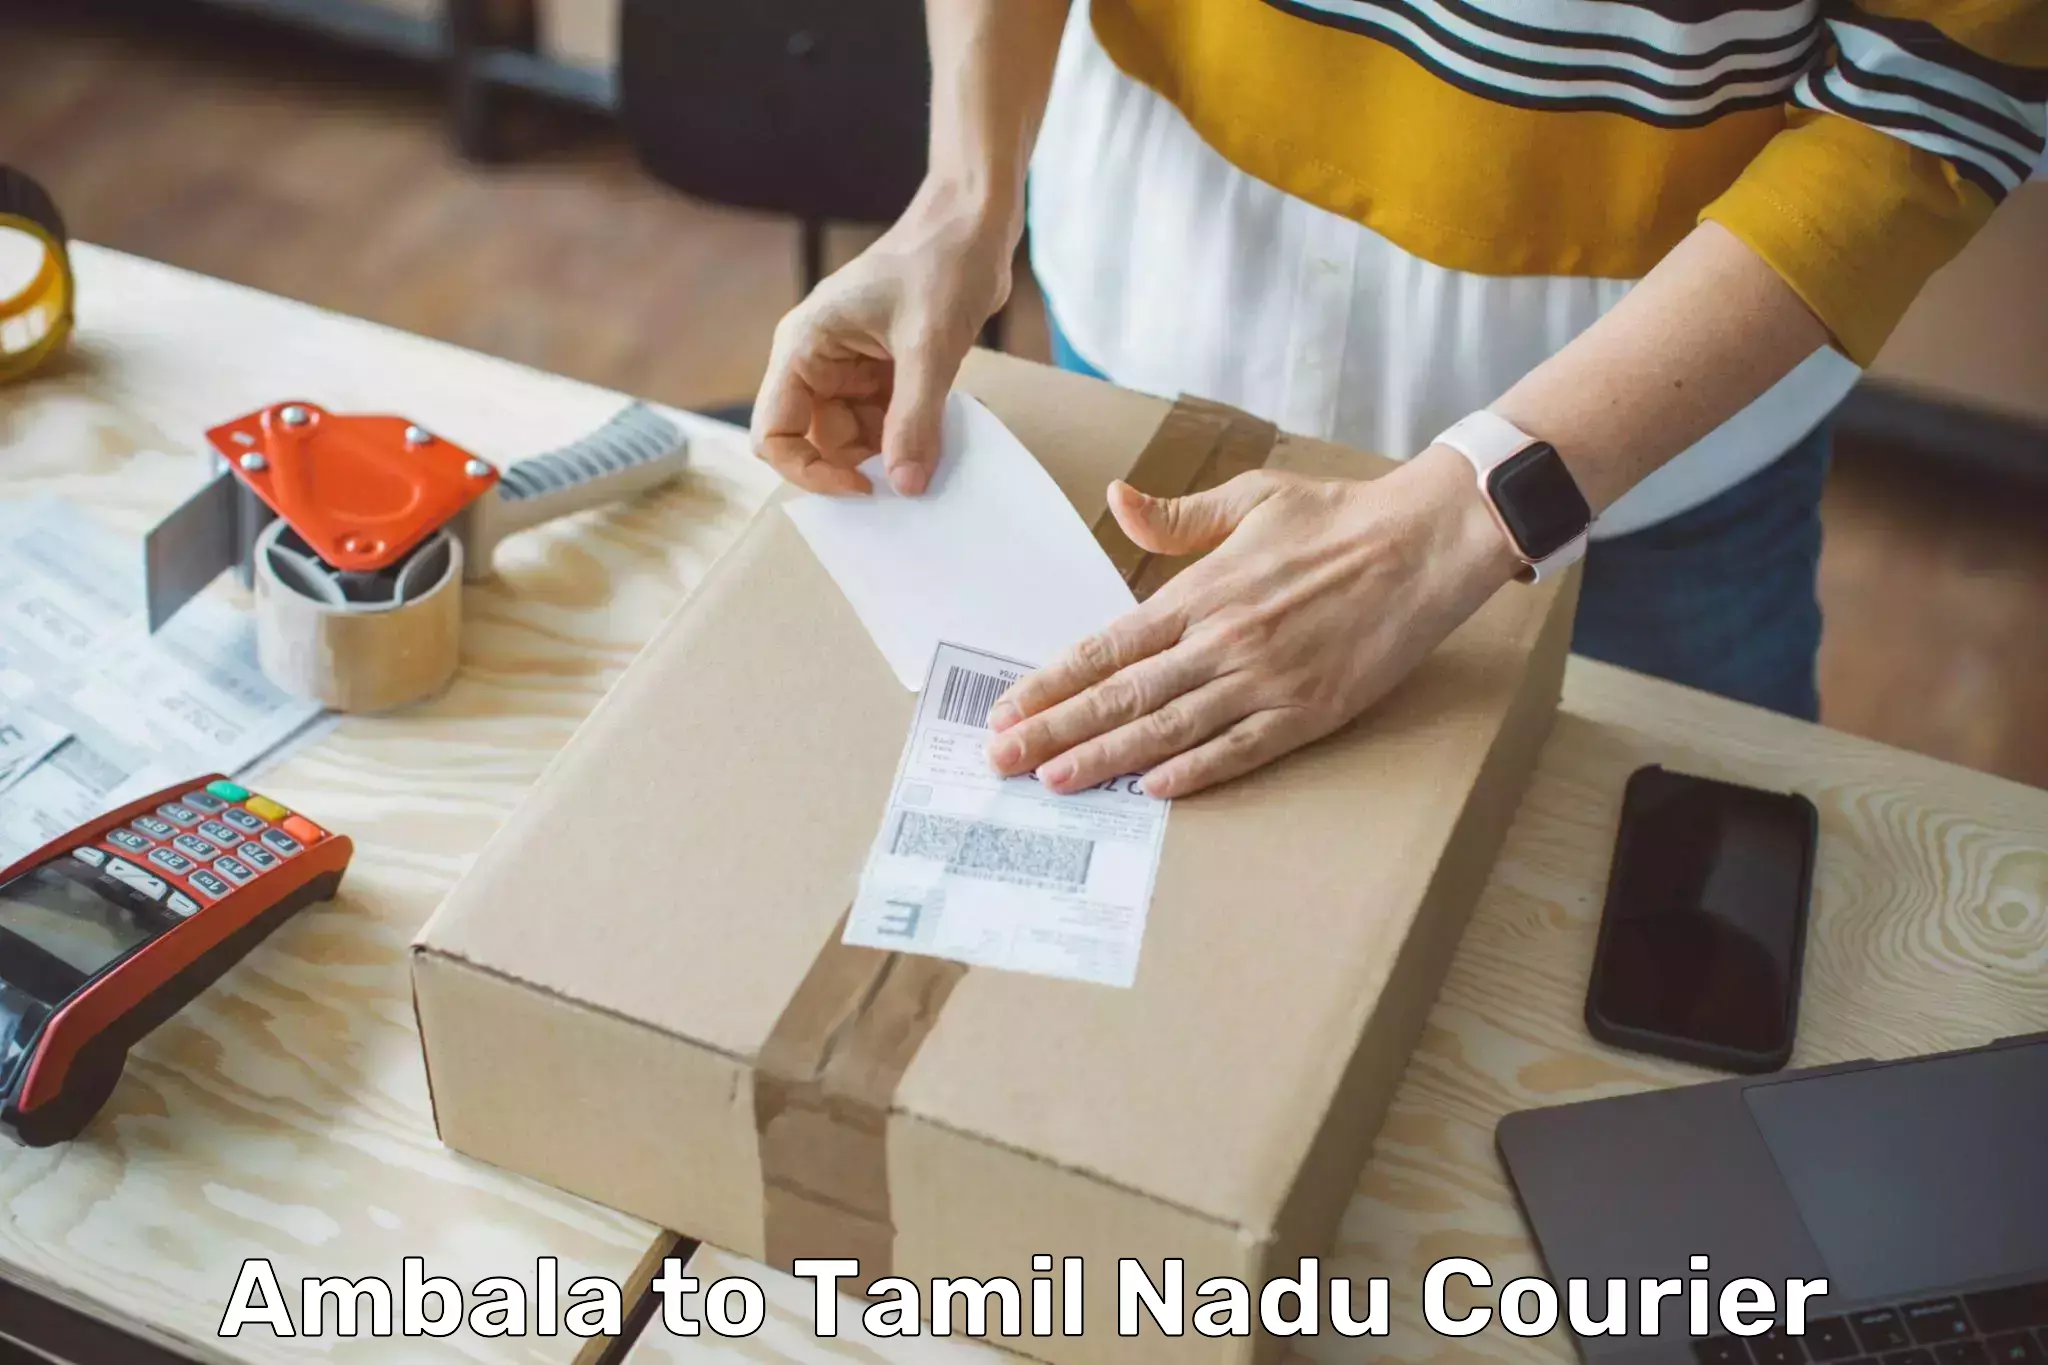 Efficient parcel transport Ambala to Vilathikulam